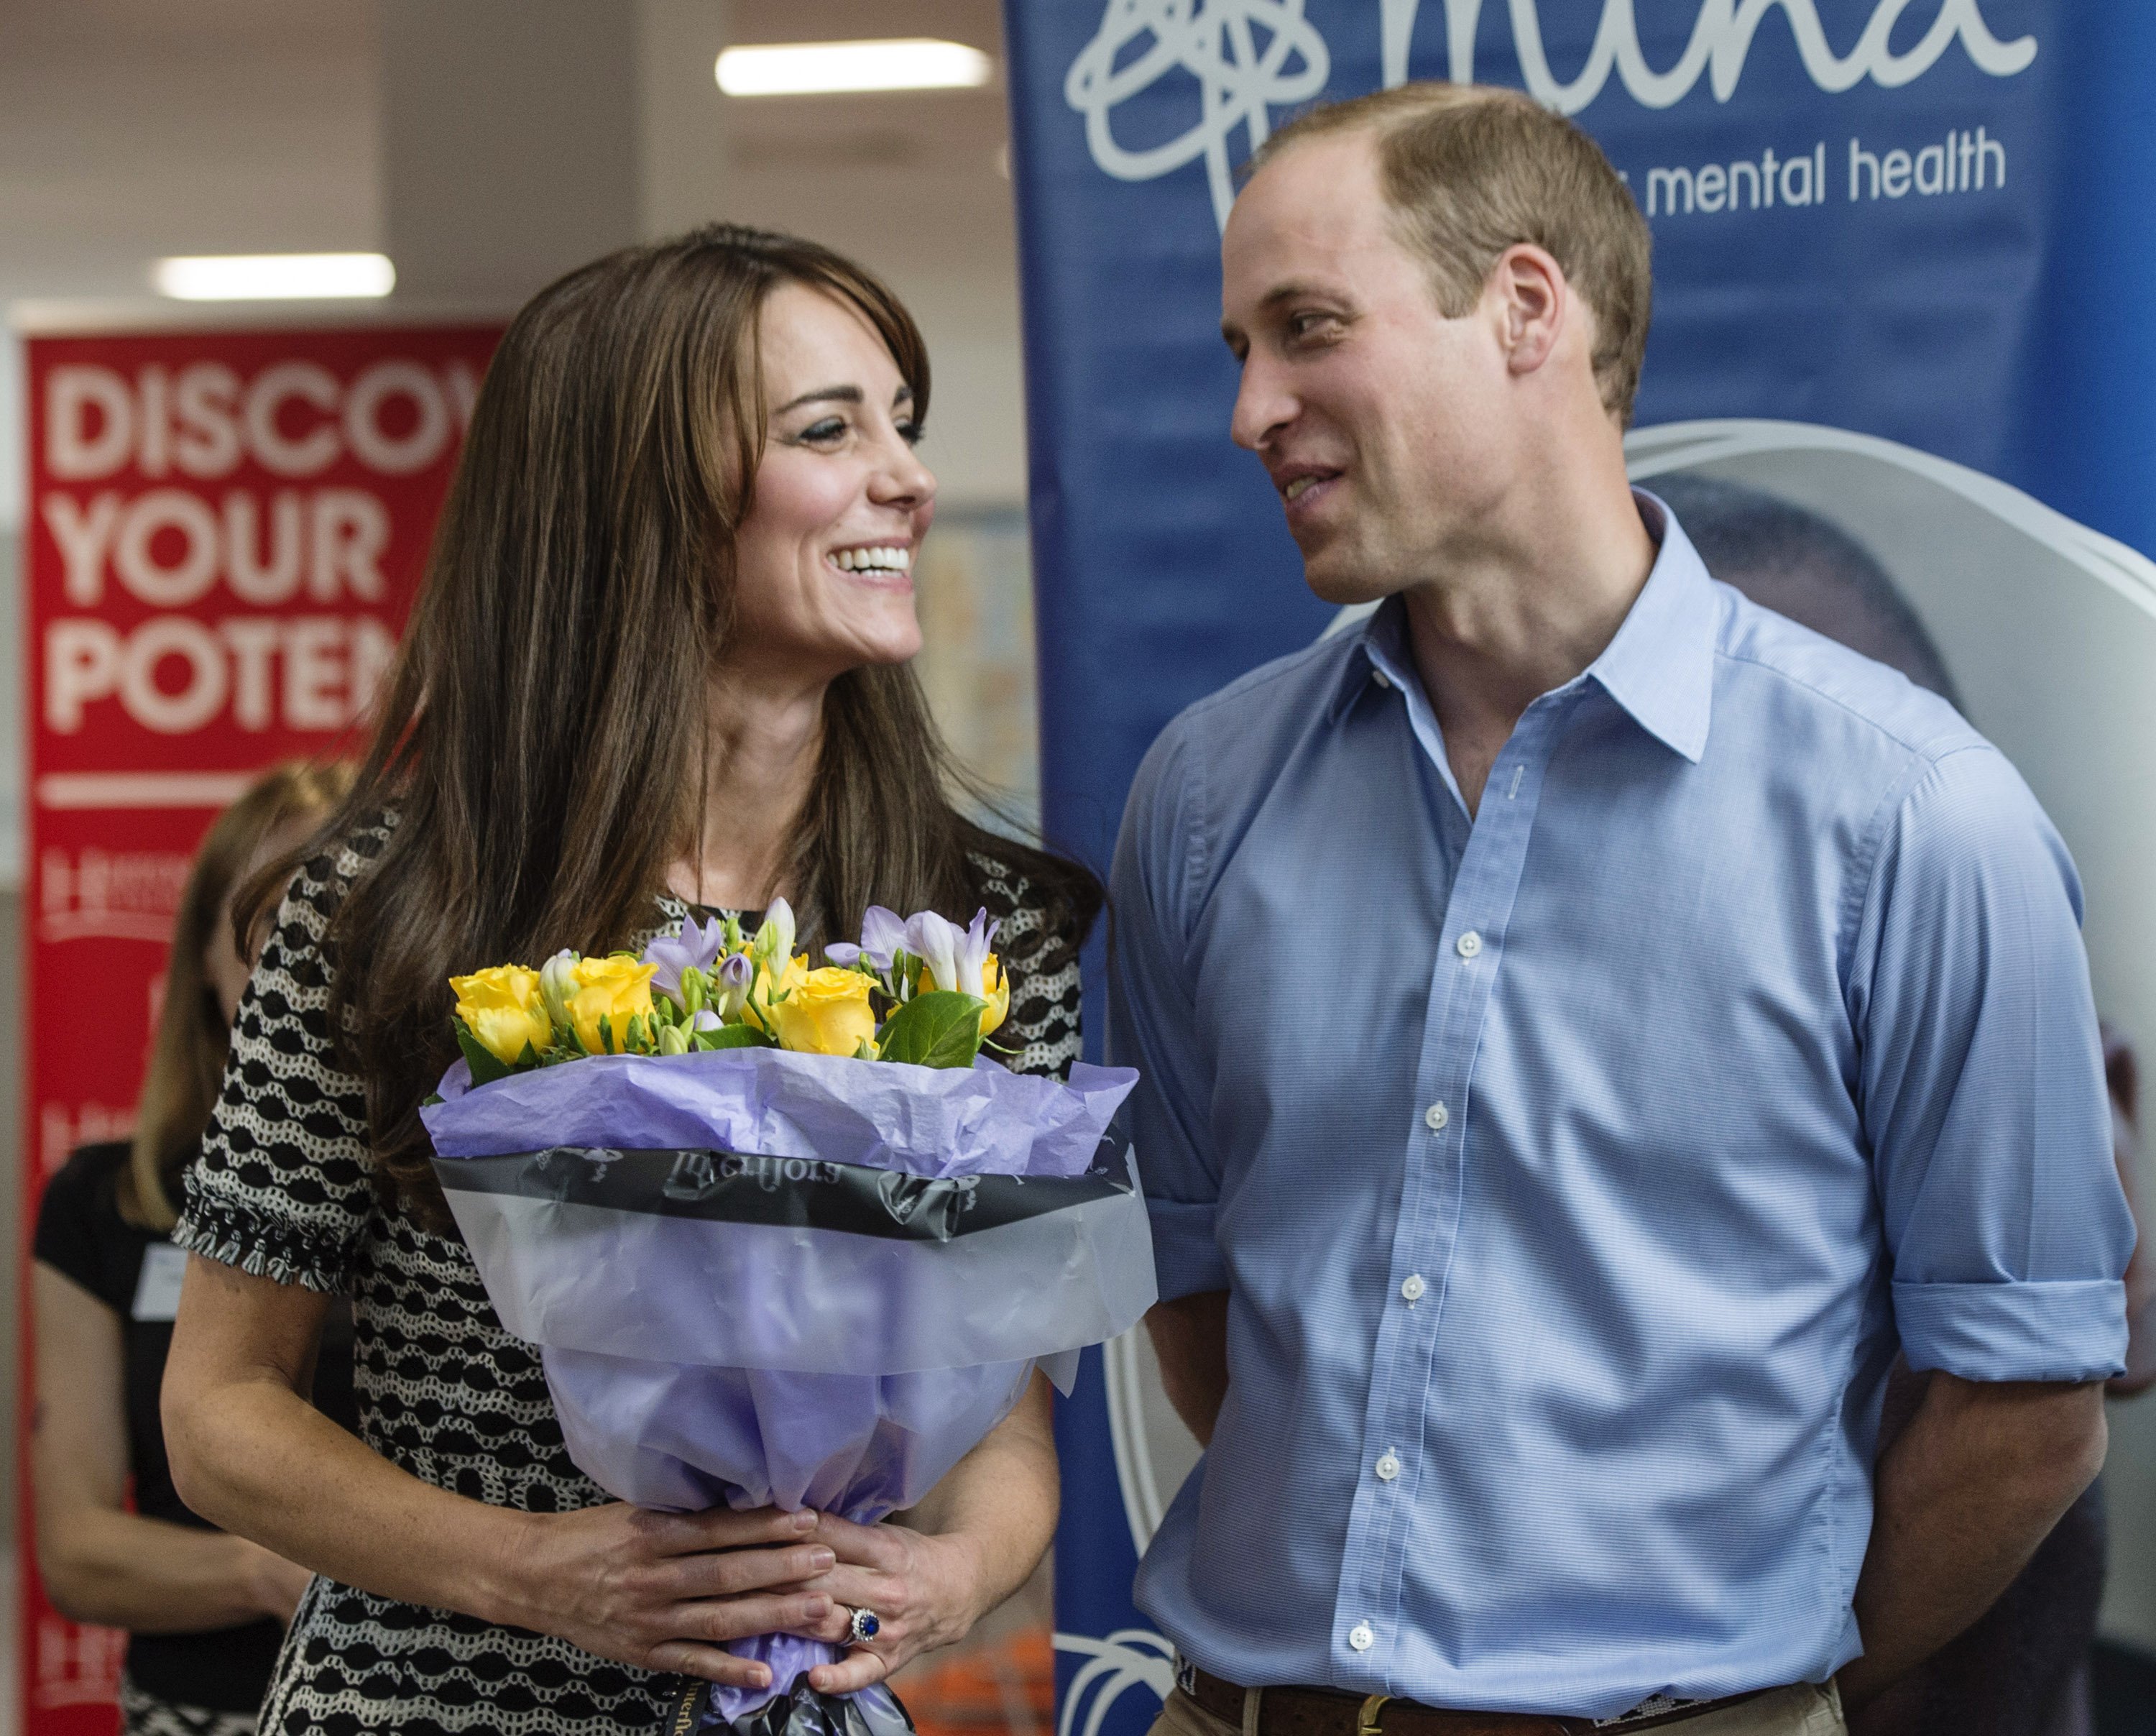 Le duc de Cambridge et Catherine, ainsi que la duchesse de Cambridge, assistent à un événement organisé par Mind au Harrow College | Source: Getty Images